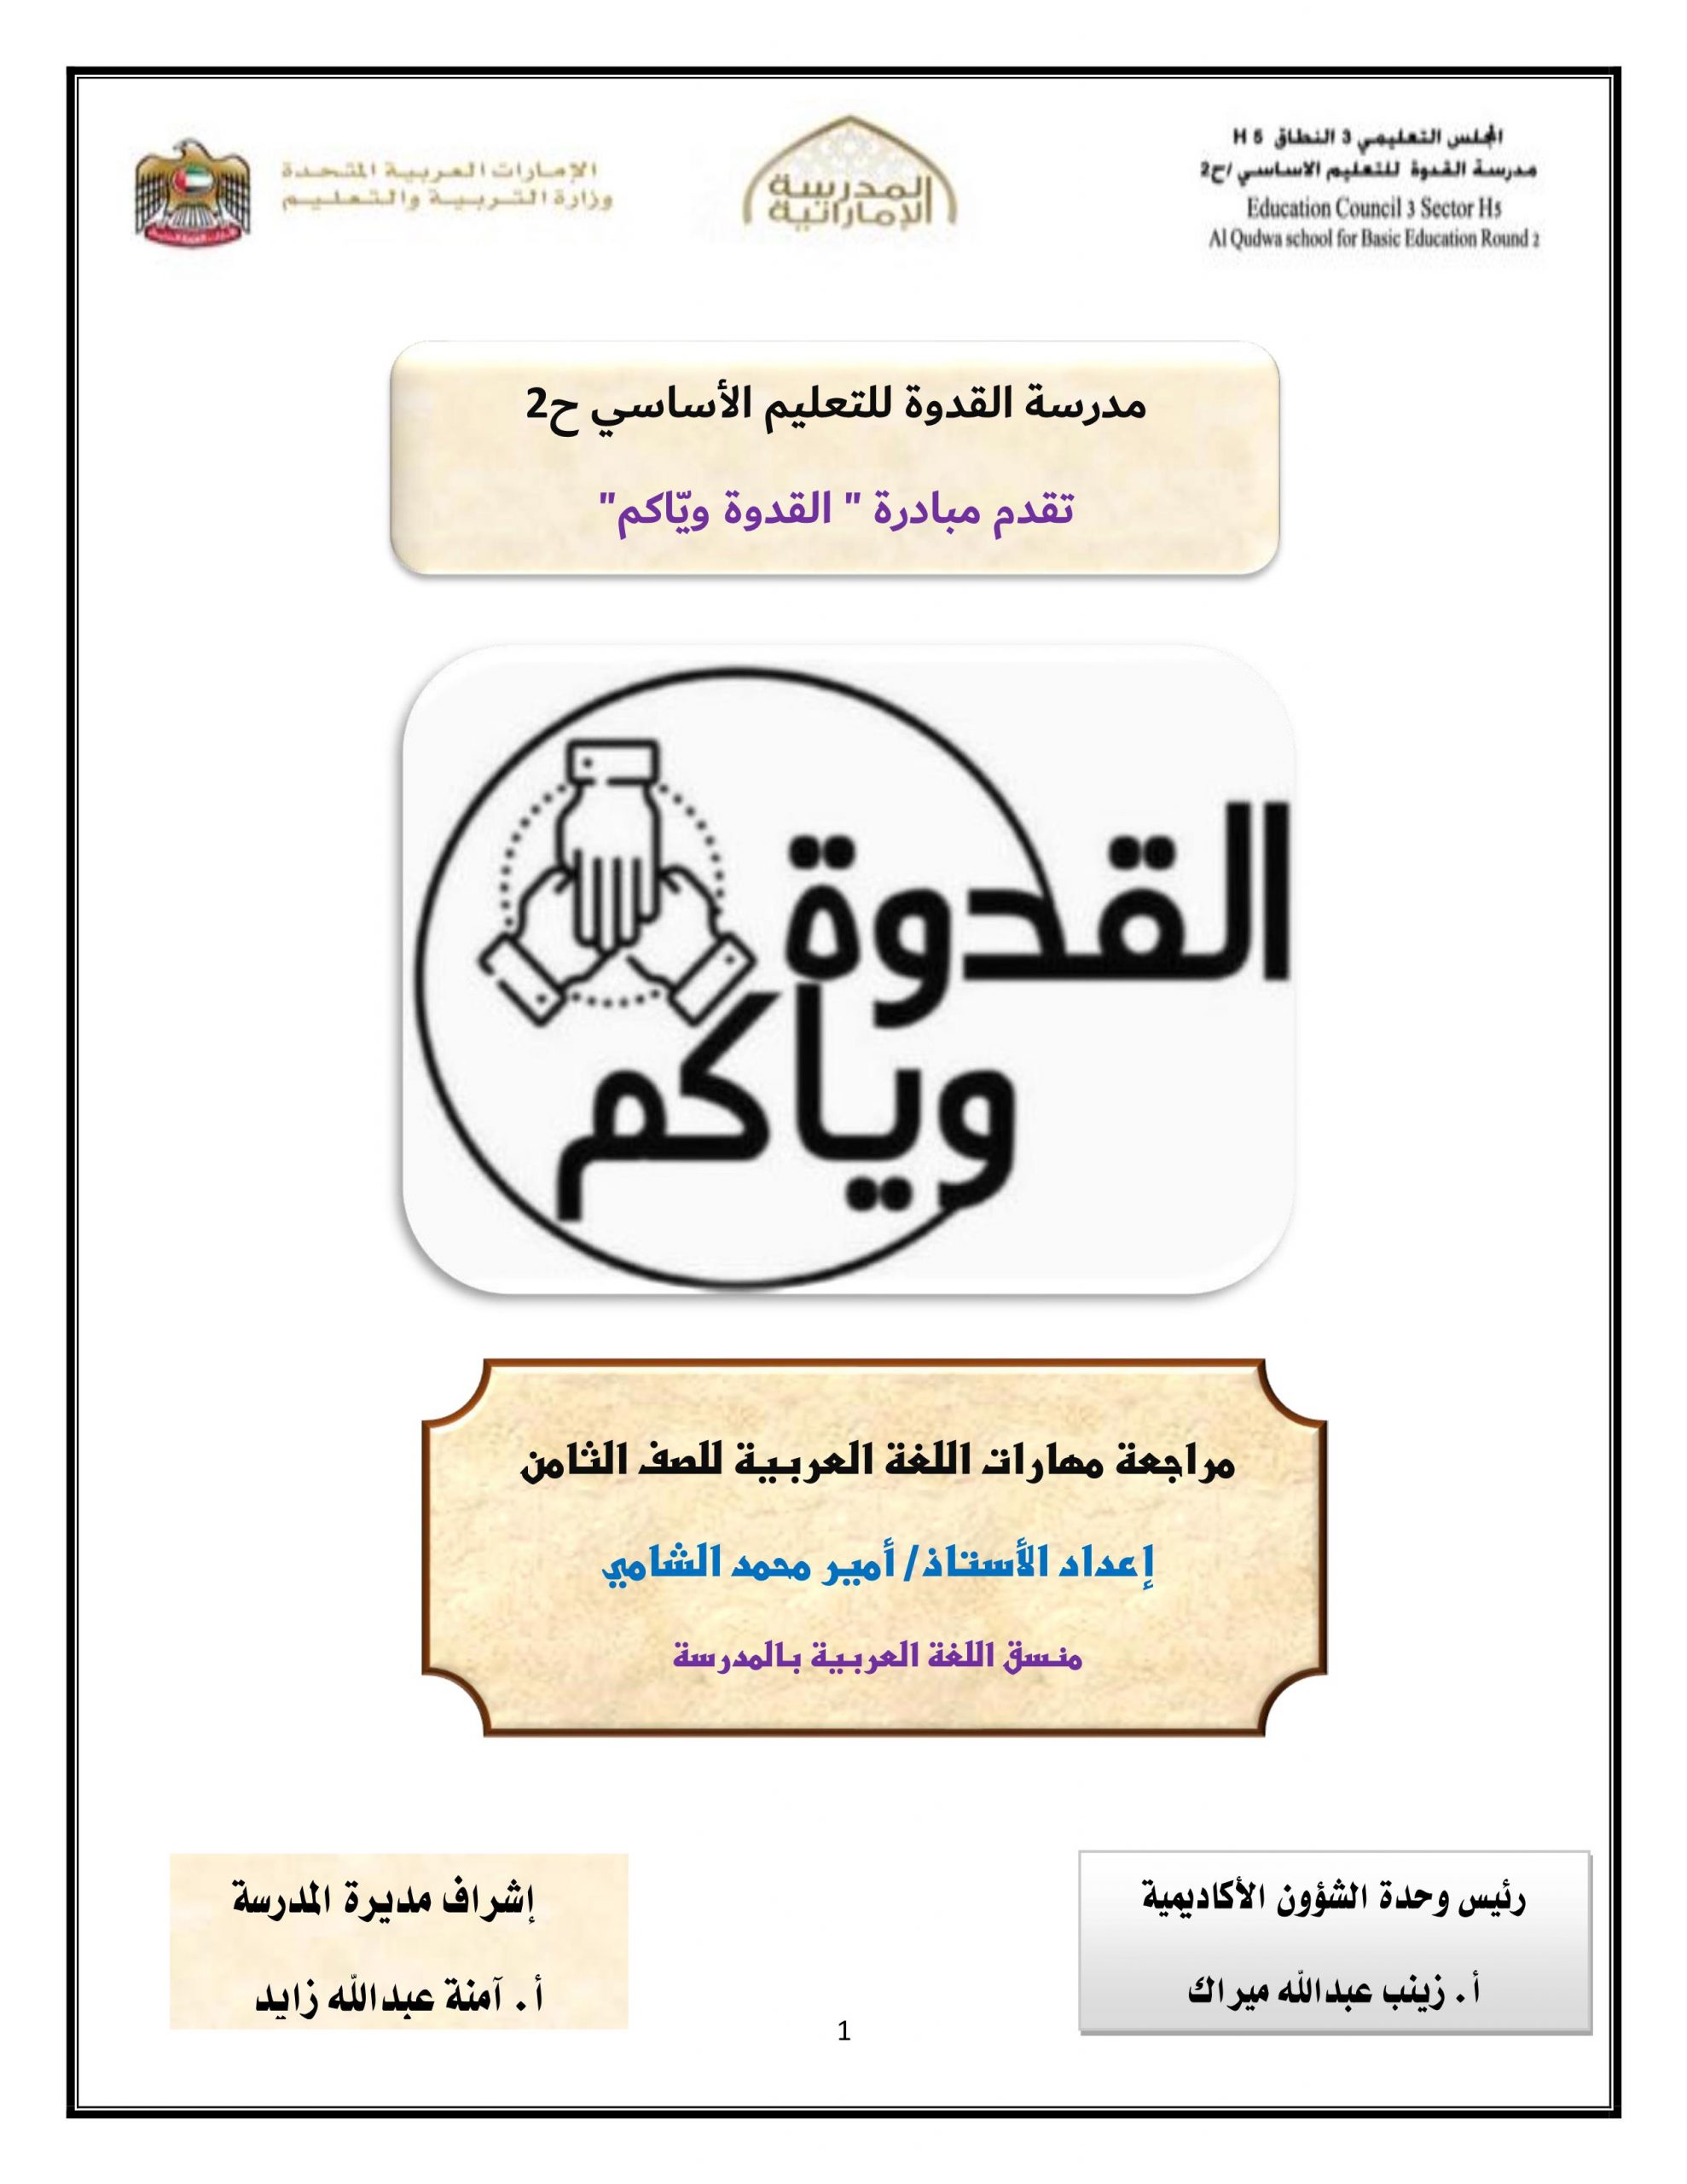 اوراق عمل مراجعة مهارات منتوعة الصف الثامن مادة اللغة العربية 